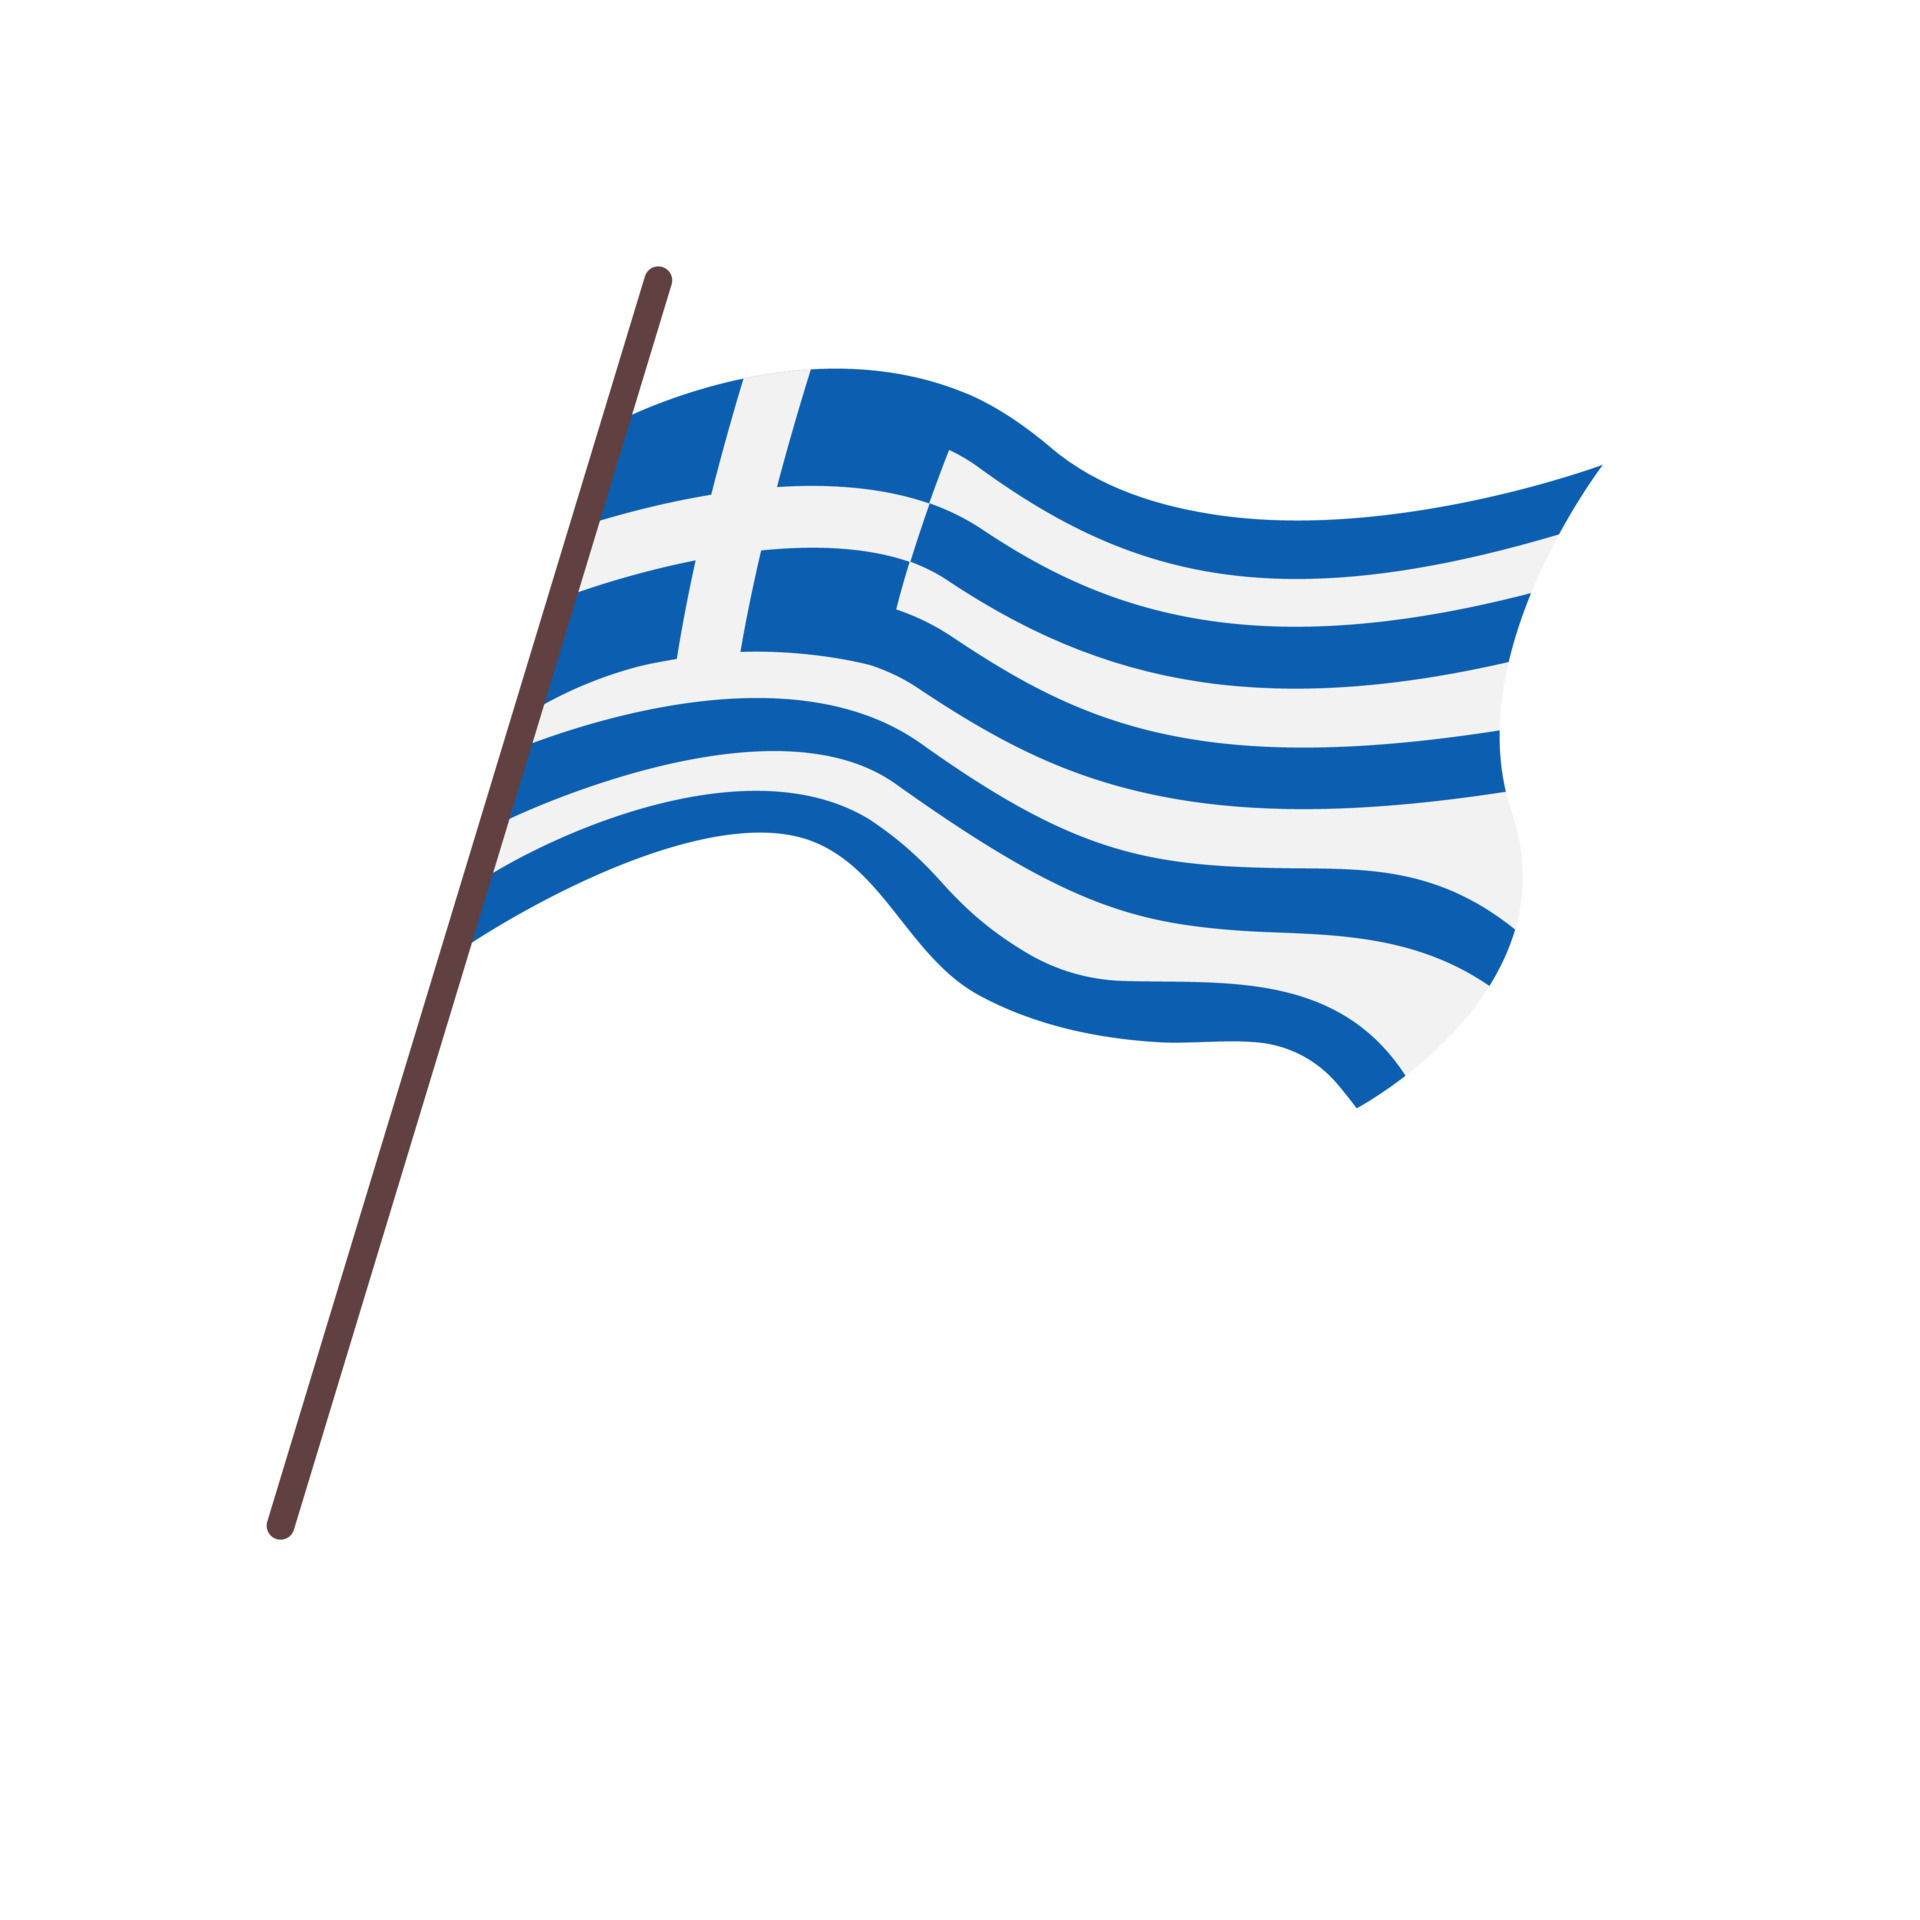 Cờ Hy Lạp có thập giá được thiết kế đẹp mắt và truyền cảm hứng. Nếu bạn muốn thấy những chú dê trên cờ, hãy xem hình ảnh này để có cái nhìn qua đôi mắt của người Hy Lạp.